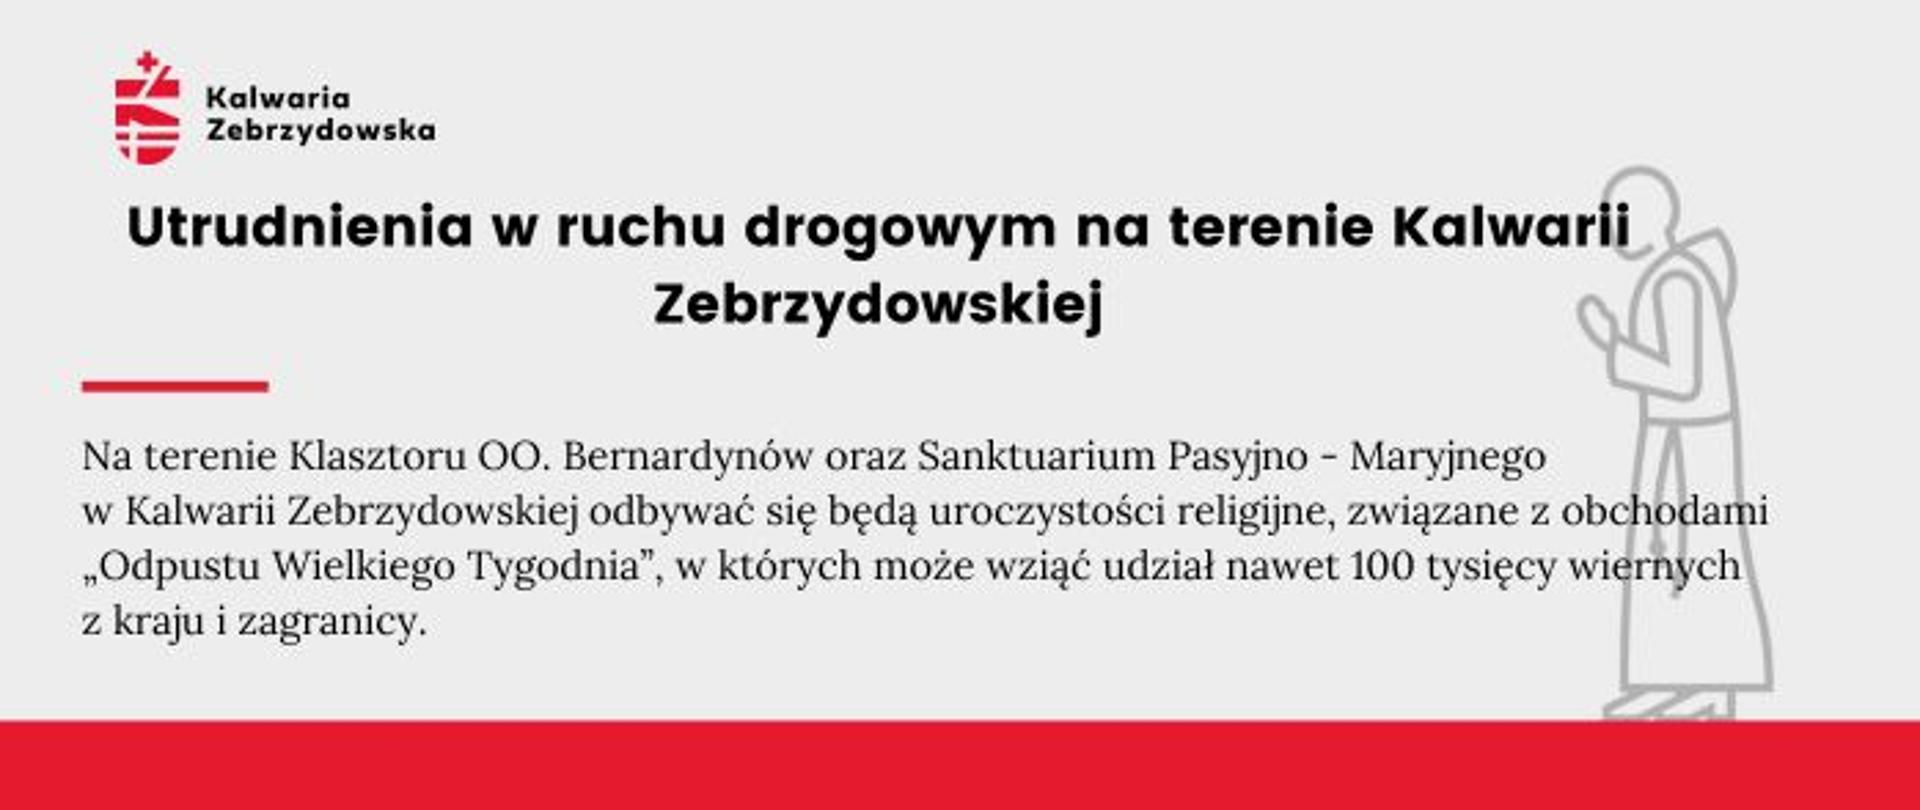 Plansza informacyjna - utrudnienia w ruchu drogowym na terenie Kalwarii Zebrzydowskiej. 